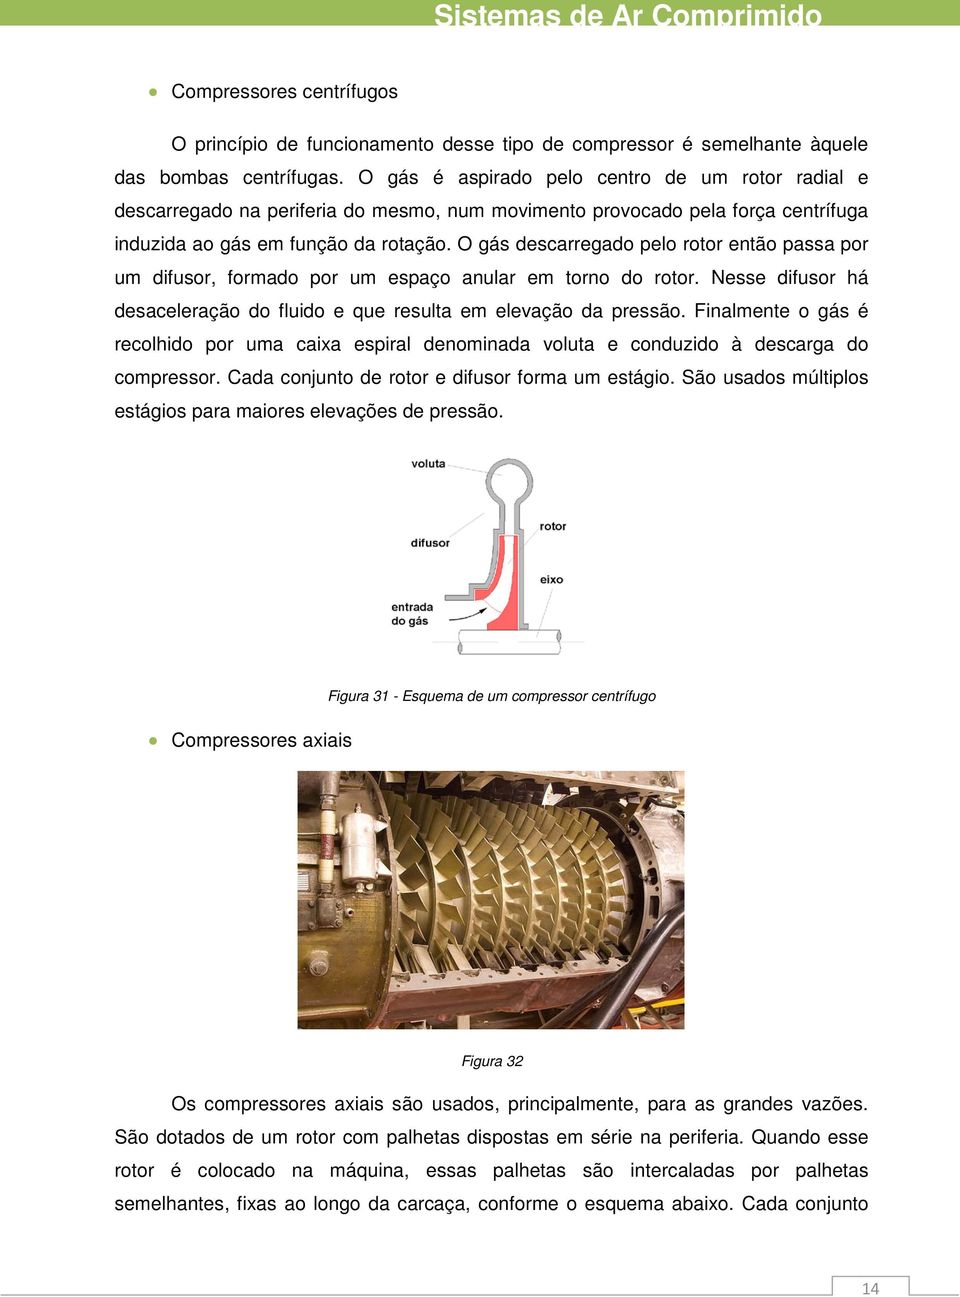 O gás descarregado elo rotor então assa or um difusor, formado or um esaço anular em torno do rotor. Nesse difusor há desaceleração do fluido e que resulta em elevação da ressão.